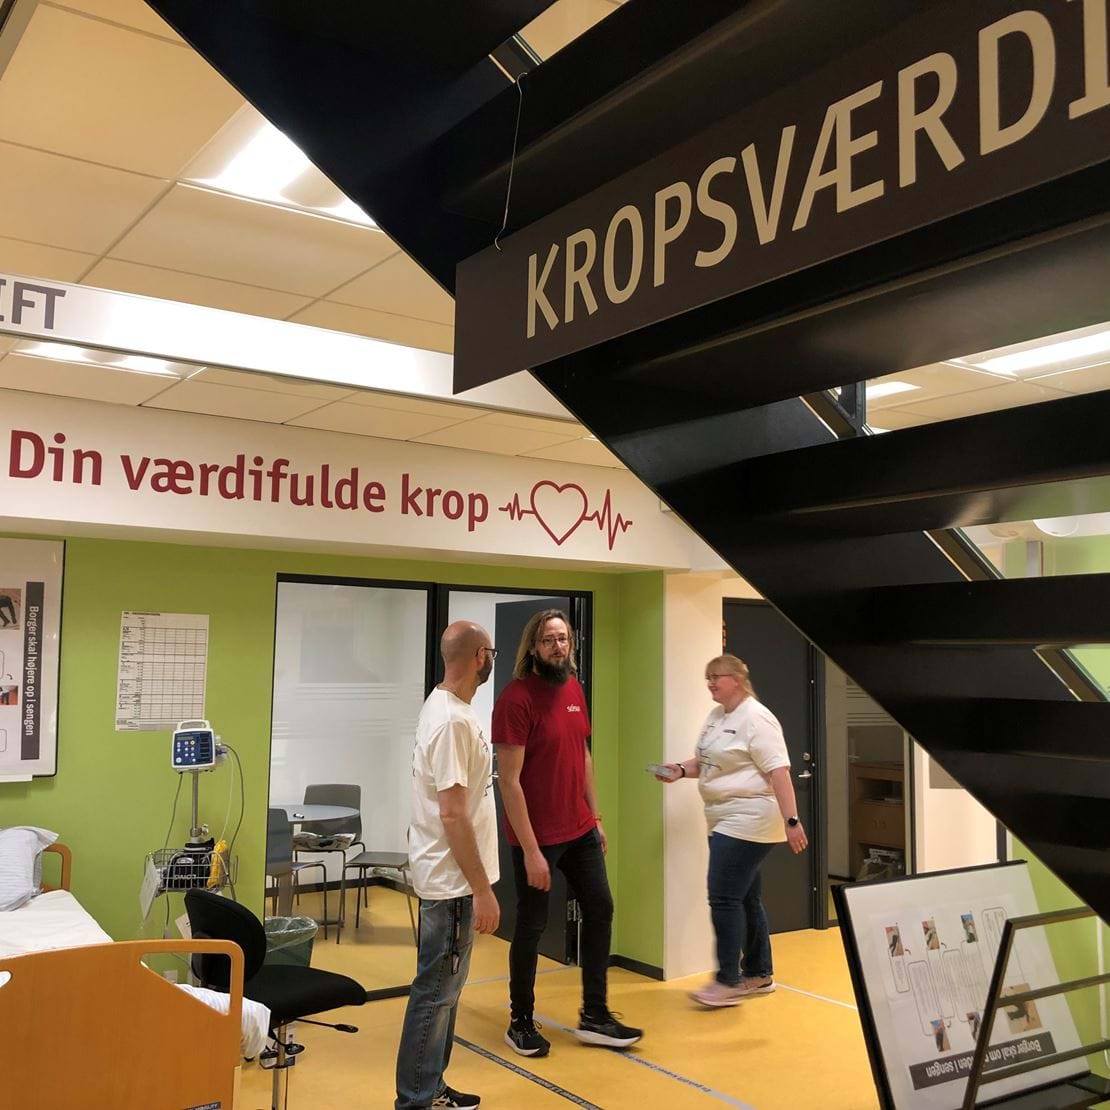 Her ses en af de første læringsstationer på SOSU Nykøbing Falster, hvor du kan styrke dine STEM-kompetencer og træne forflytning samt måling af kropsværdier. Tre medarbejdere figurerer på billedet sammen med en hospitalsseng og stationsskiltet "KROPSVÆRDI".